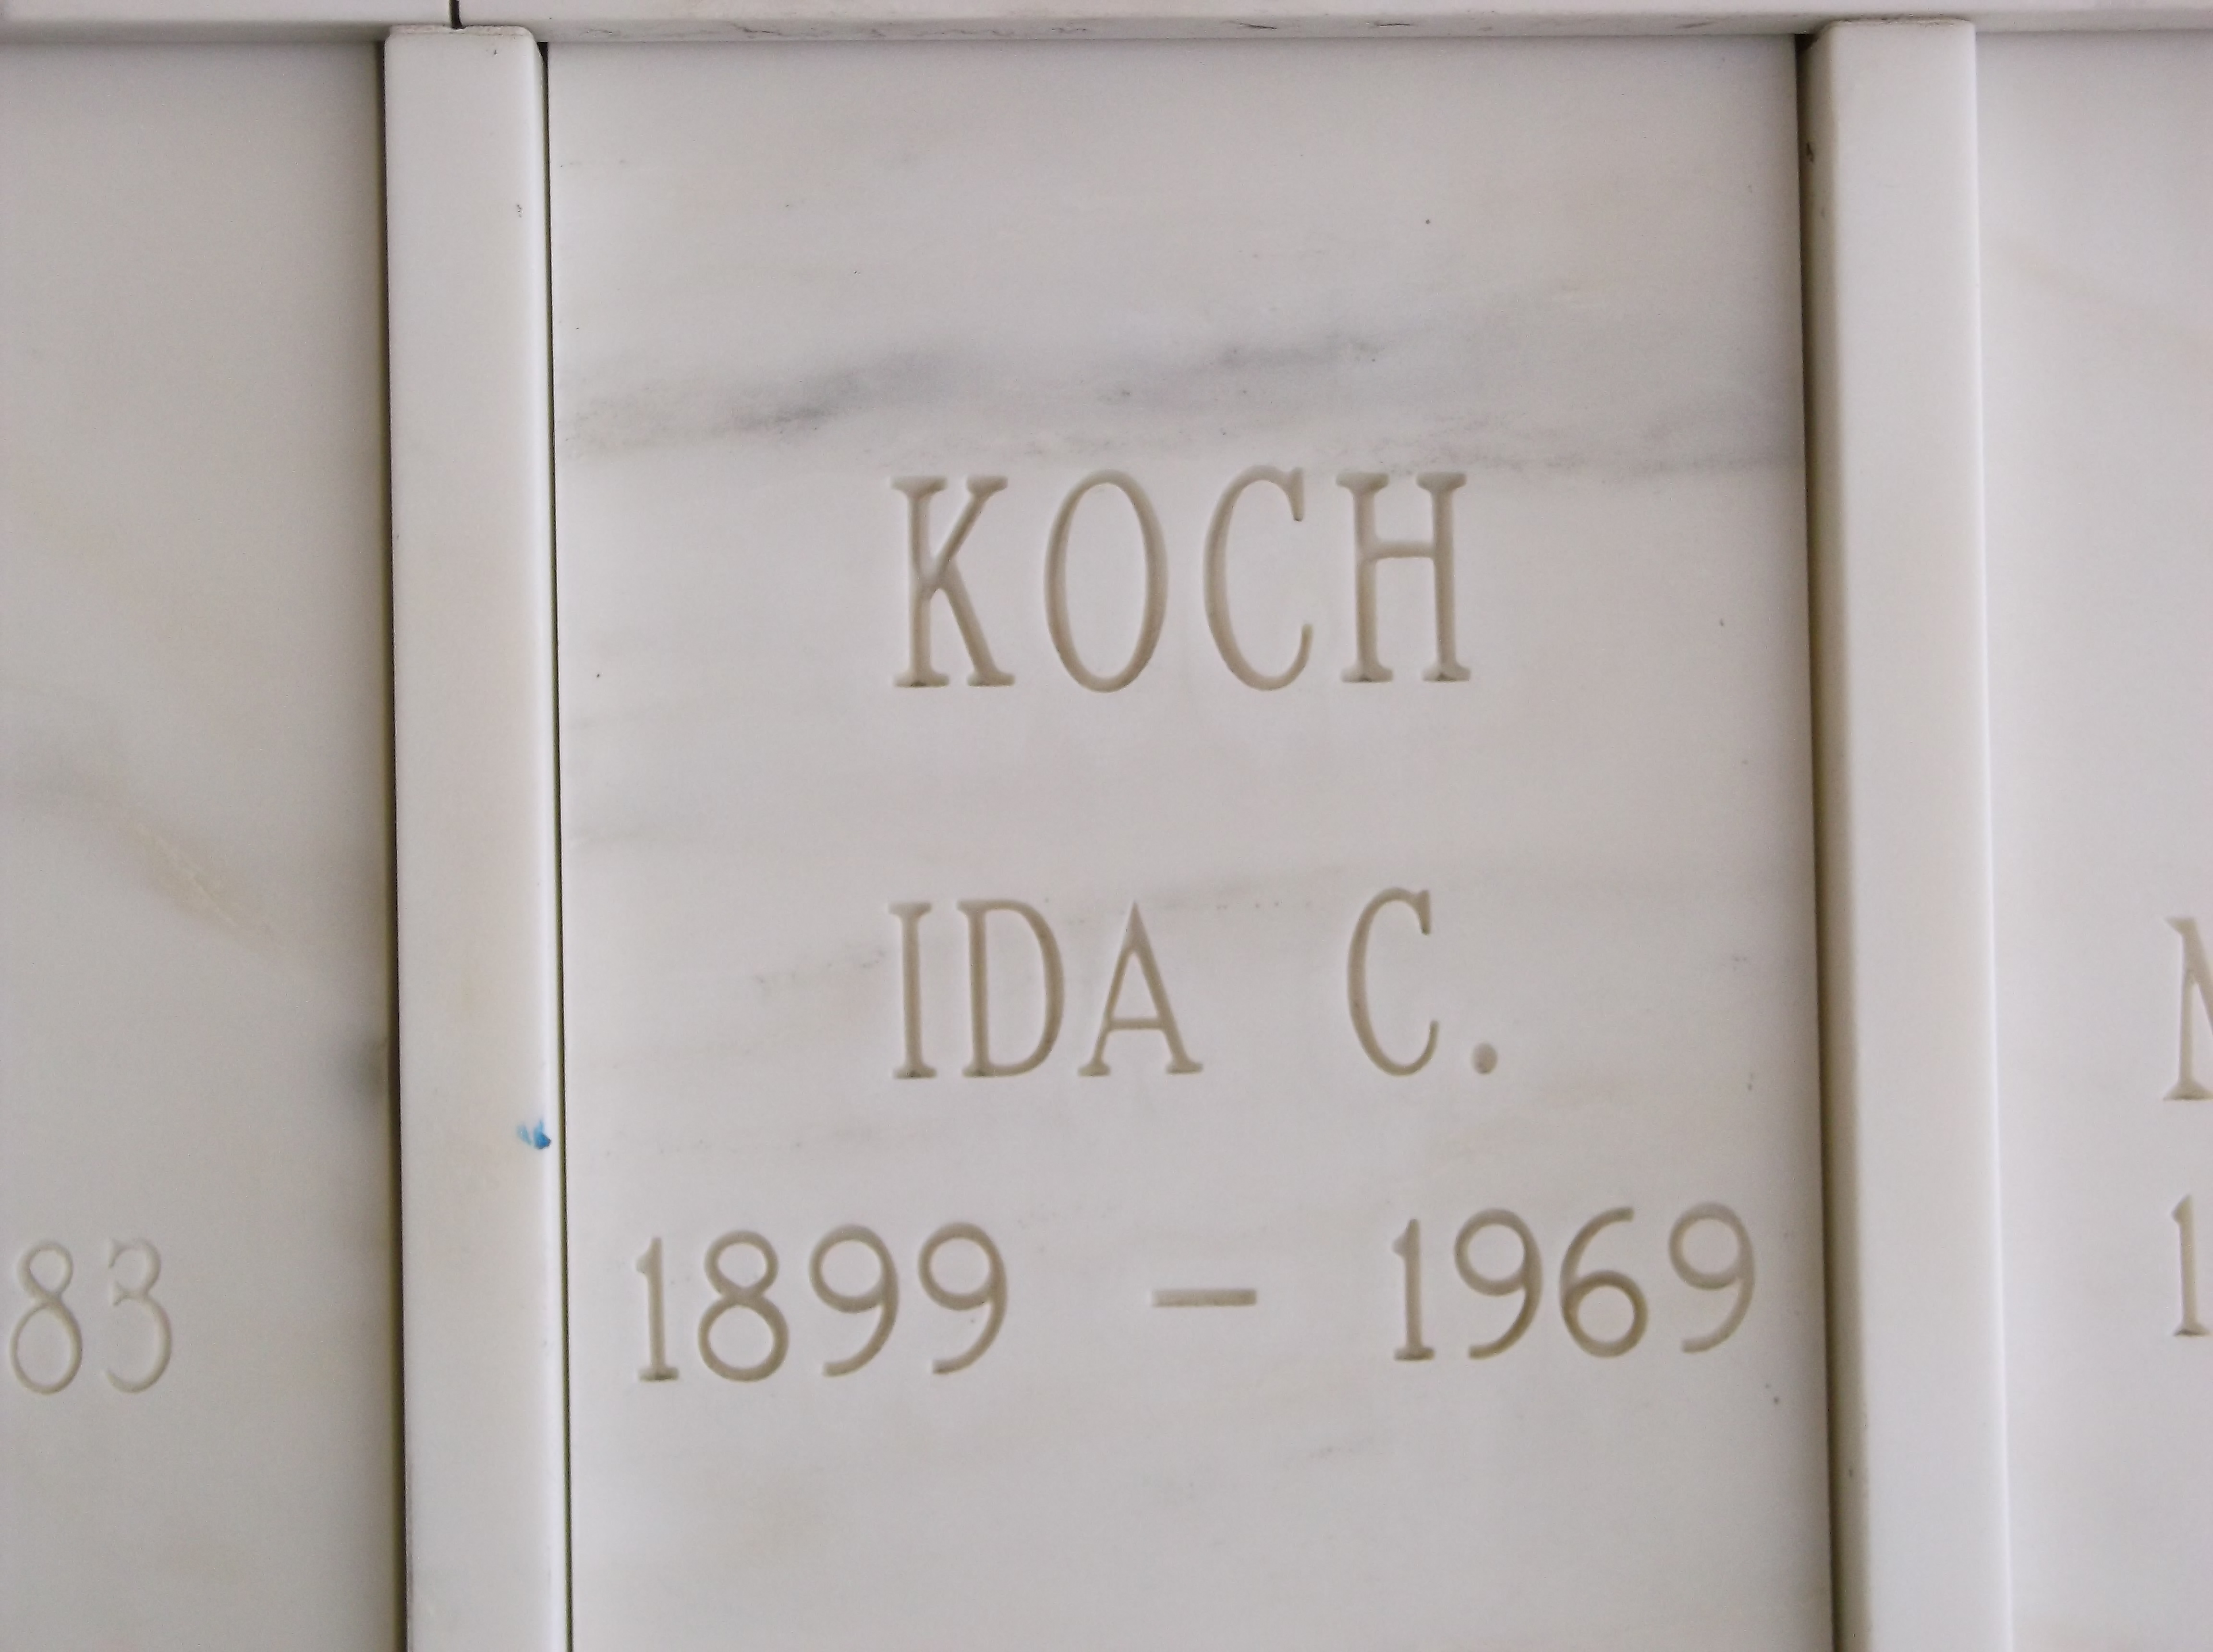 Ida C Koch